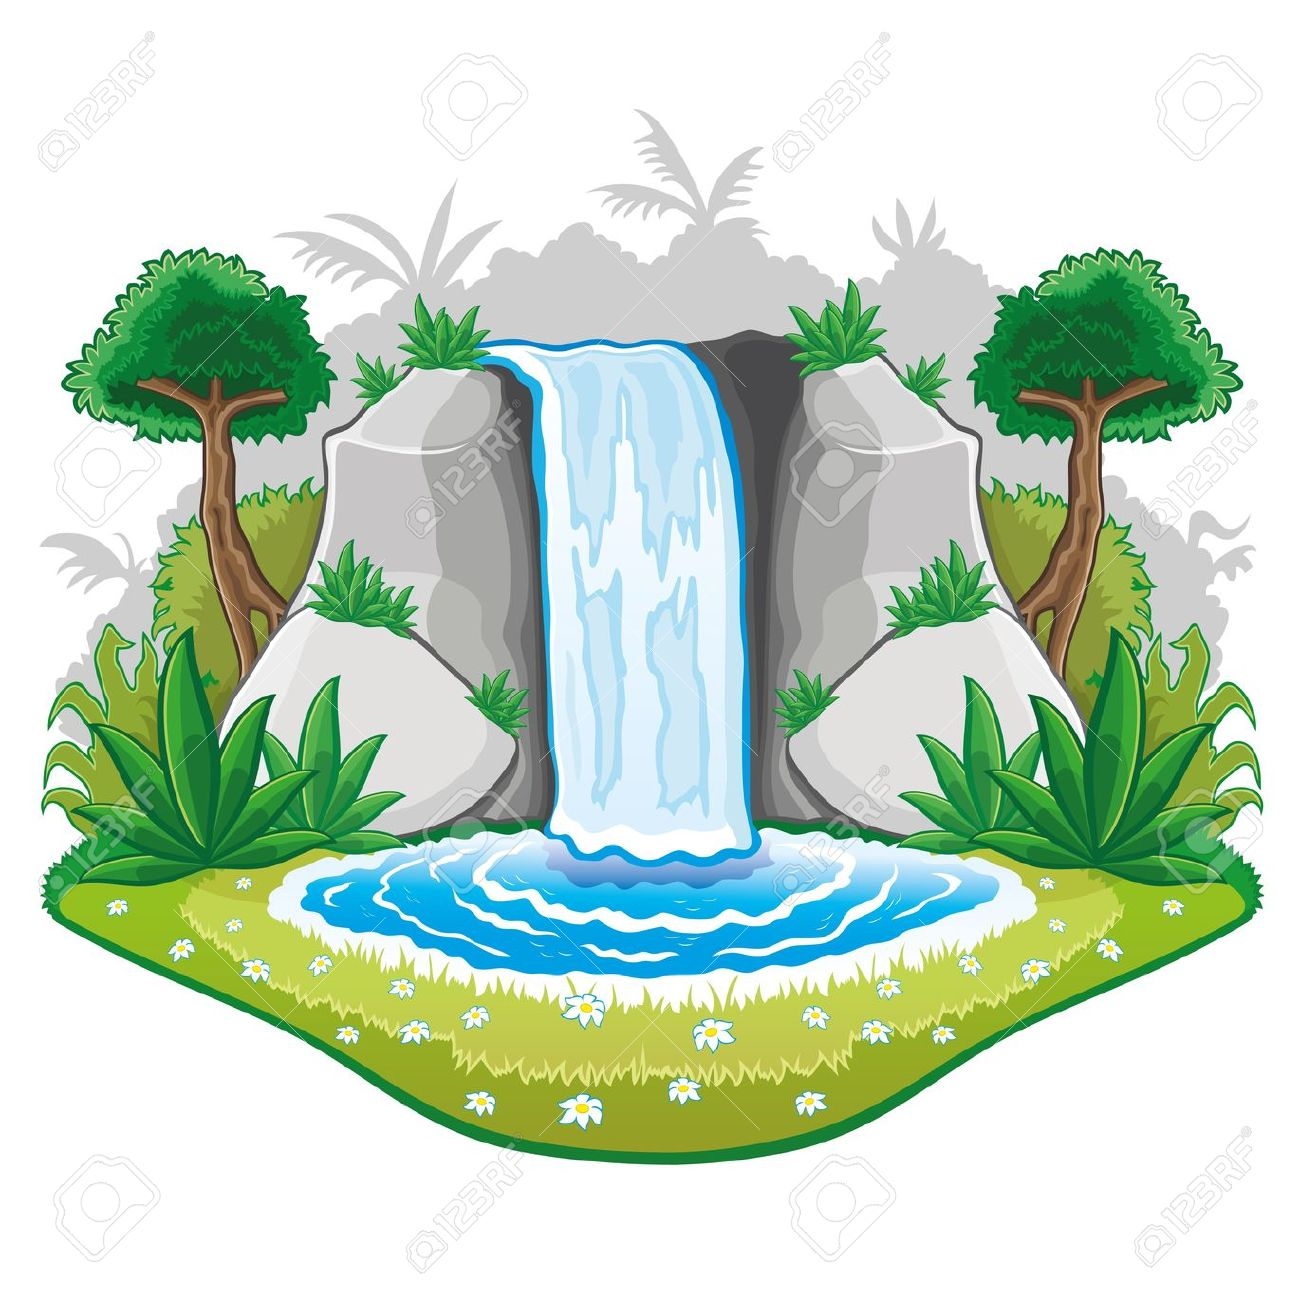 waterfall: Vector illustratio